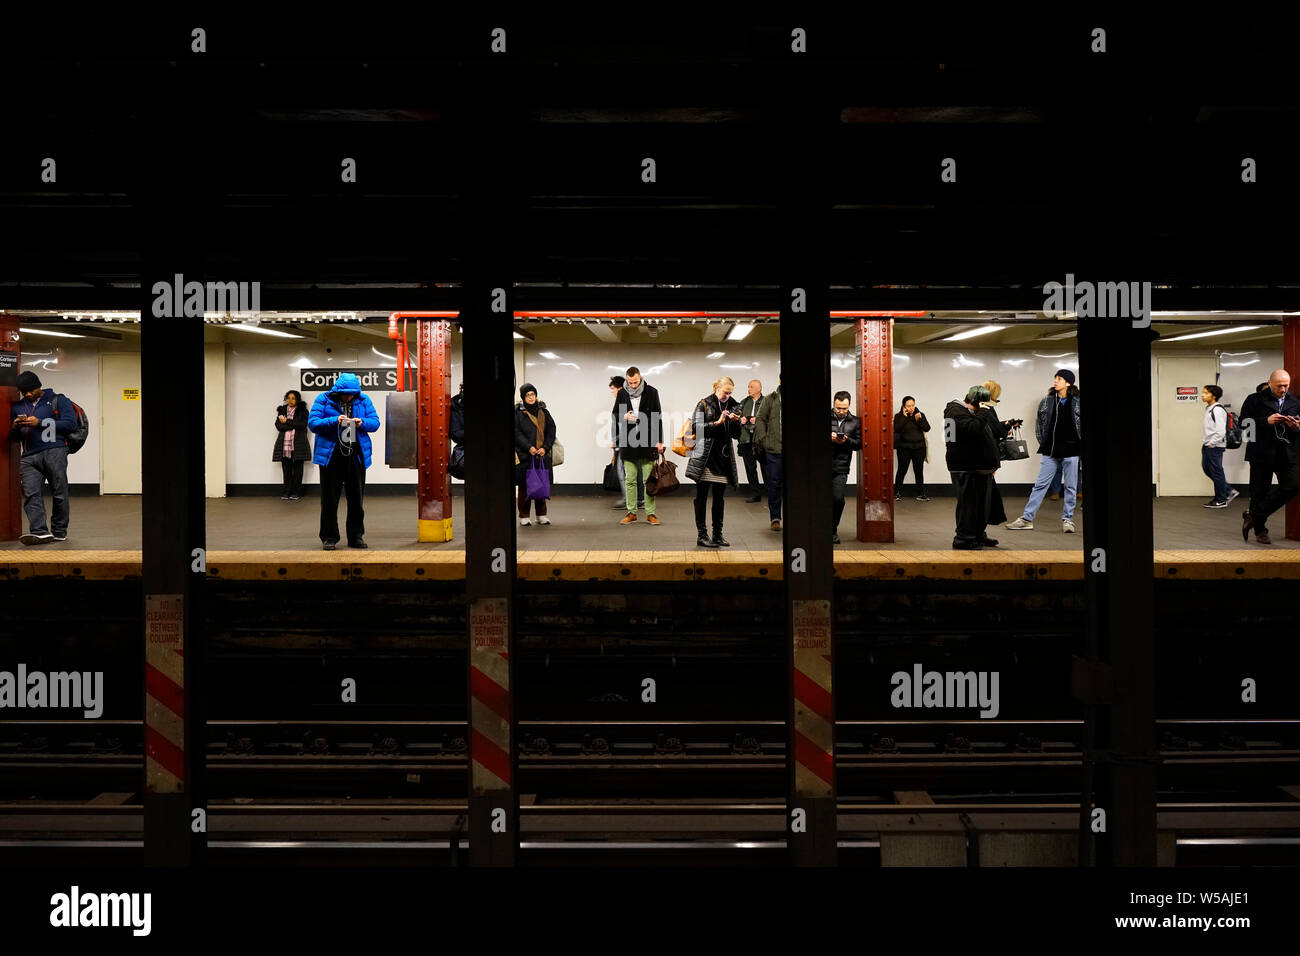 Passagiere der New Yorker U-Bahn warten auf den Zug an der Haltestelle "Cortlandt Street'. Manhatten, New York City, New York, United States Stockfoto